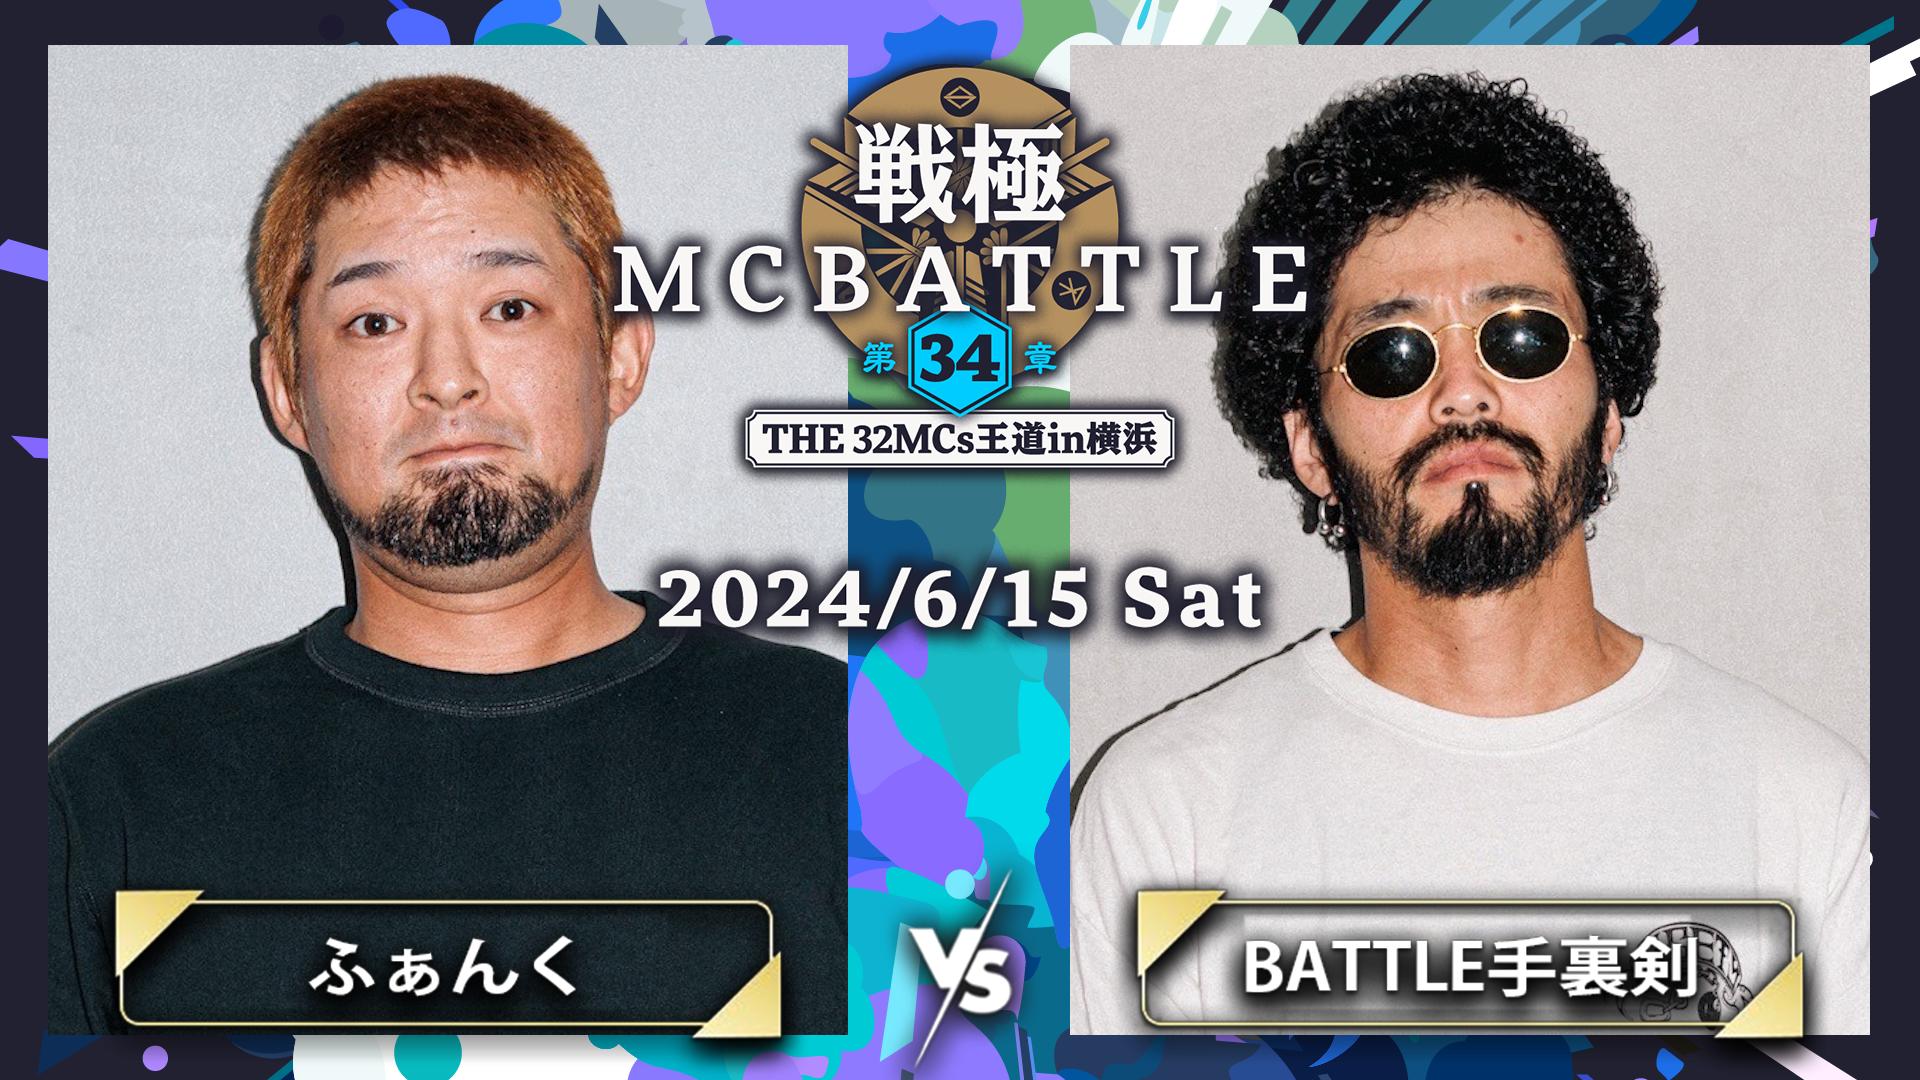 戦極MCBATTLE - ふぁんく vs BATTLE手裏剣【1回戦】